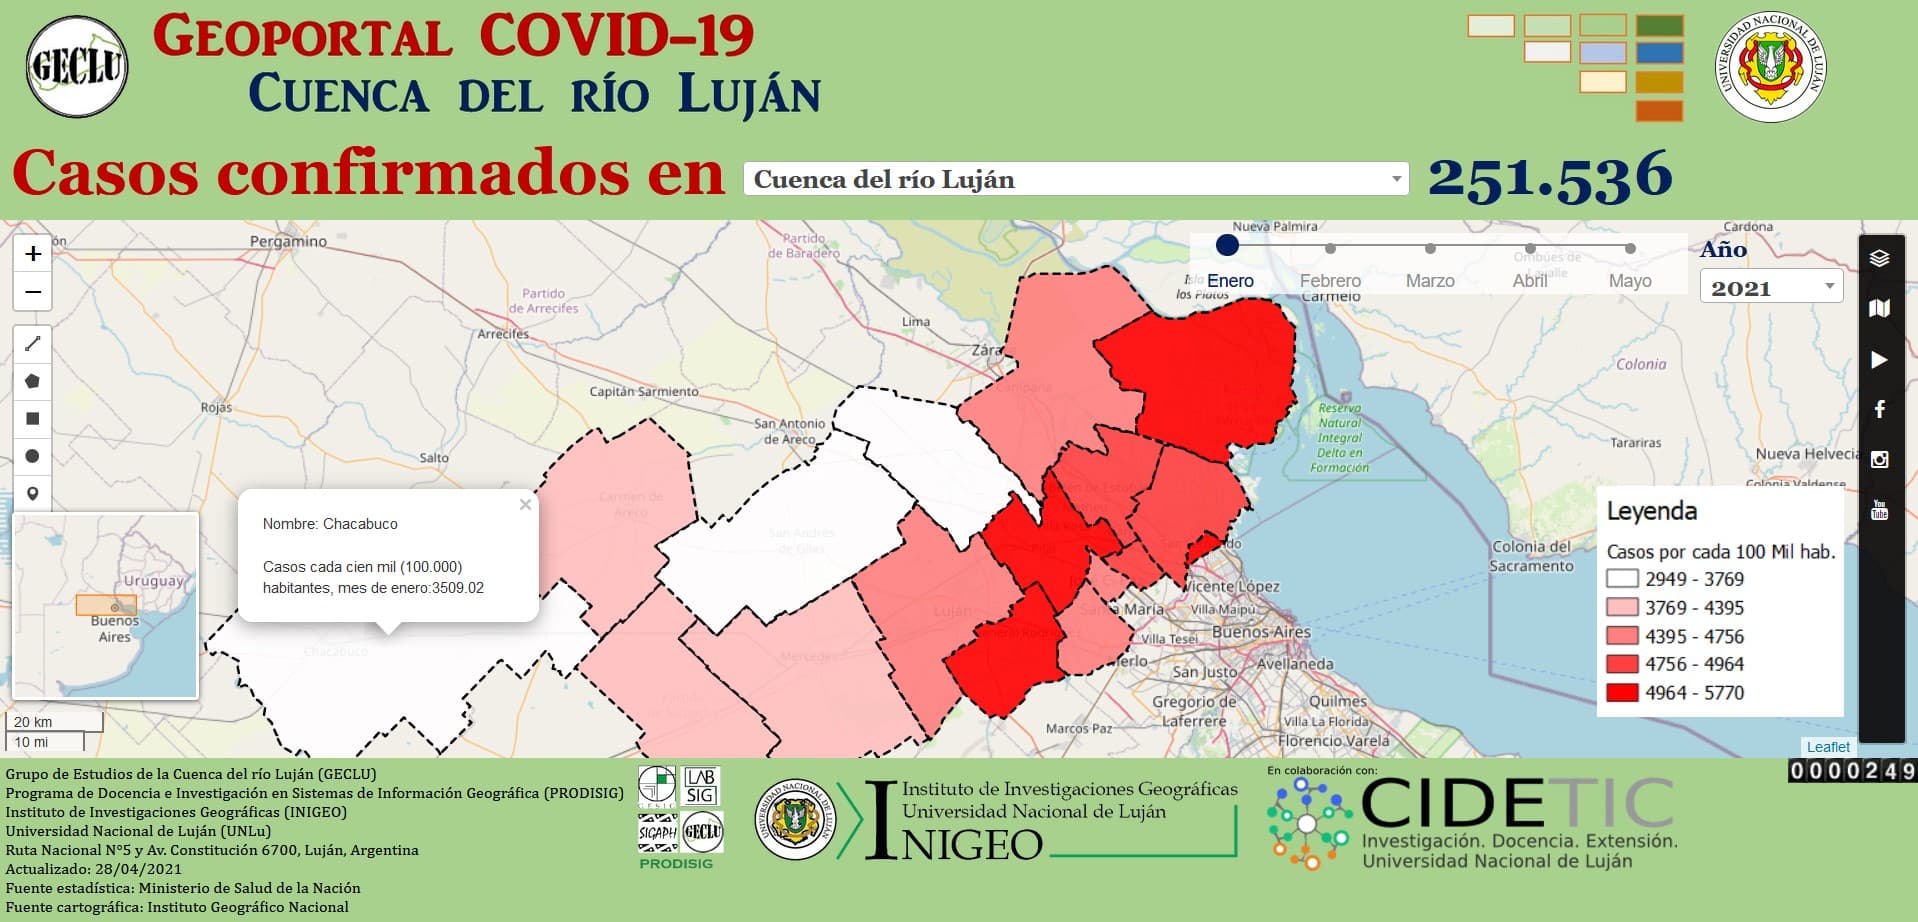 Se creó el geoportal covid-19 de los municipios de la cuenca del río Luján en Argentina